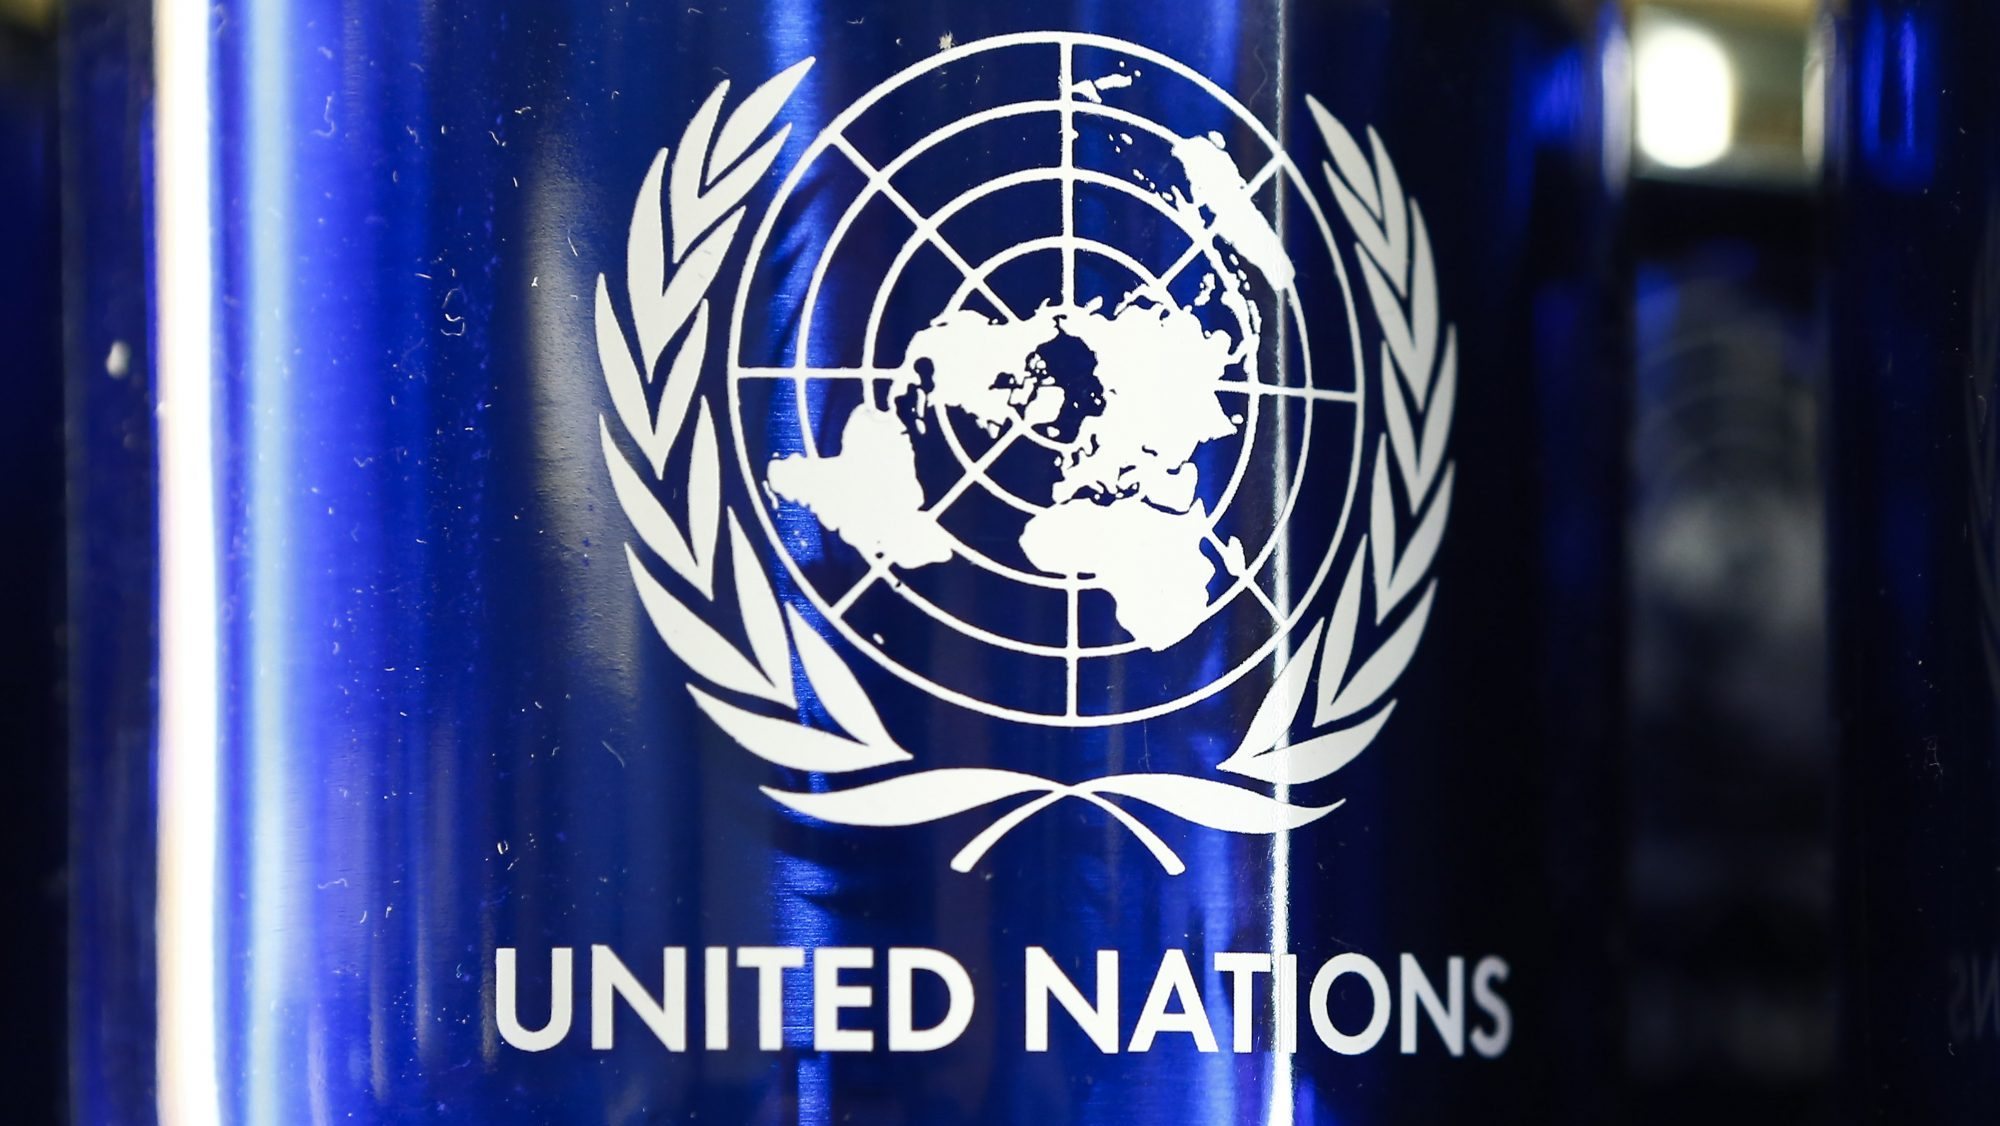 O secretário-geral da ONU, António Guterres, anunciou no início de agosto que iria criar esta missão para averiguar as circunstâncias do ataque contra a prisão ucraniana de Olenivka, depois de ter recebido pedidos por parte da Rússia e da Ucrânia